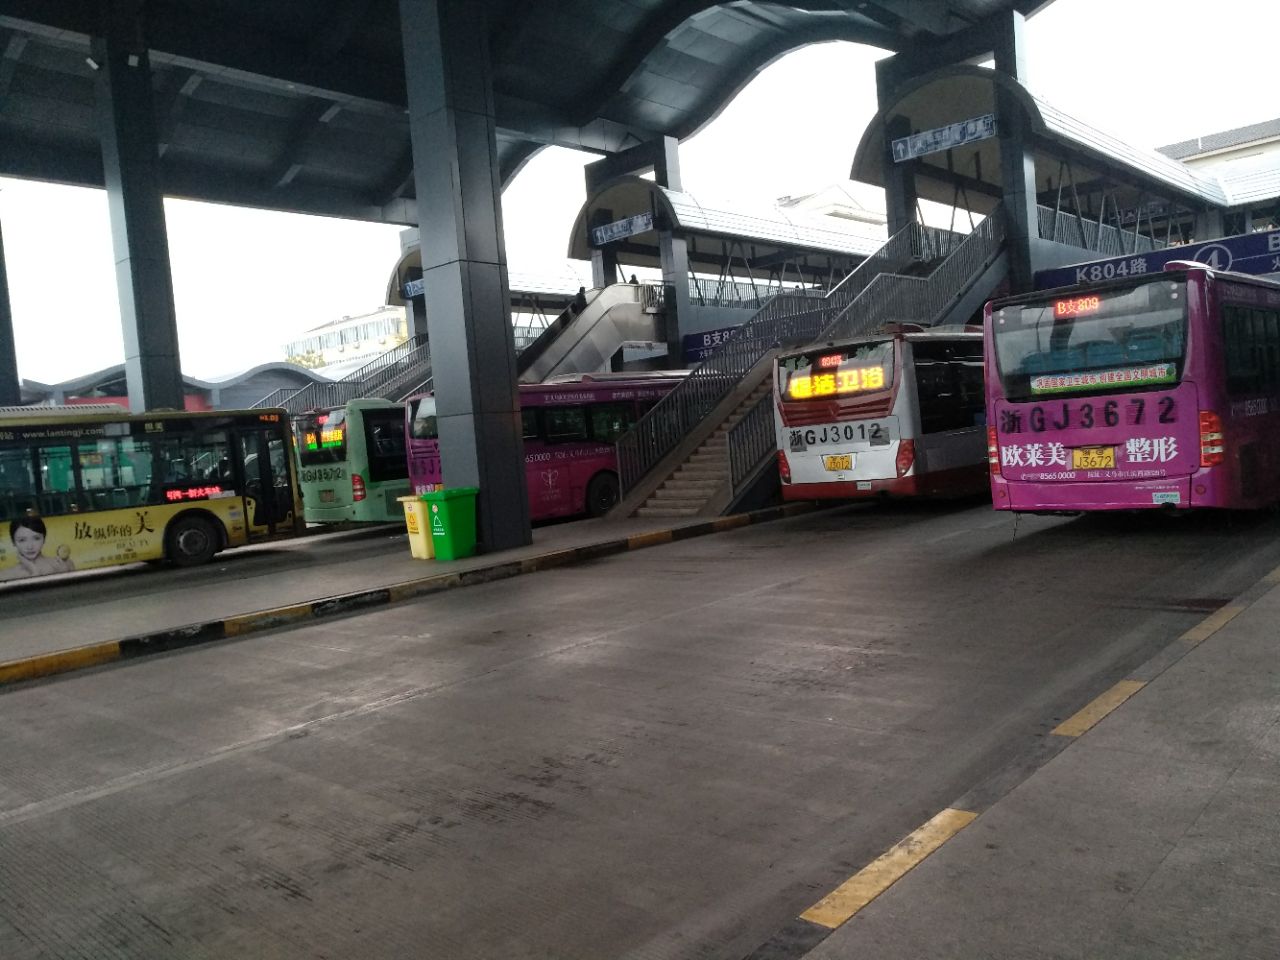 义乌火车站除到佛堂的公交车,其他都有公交车